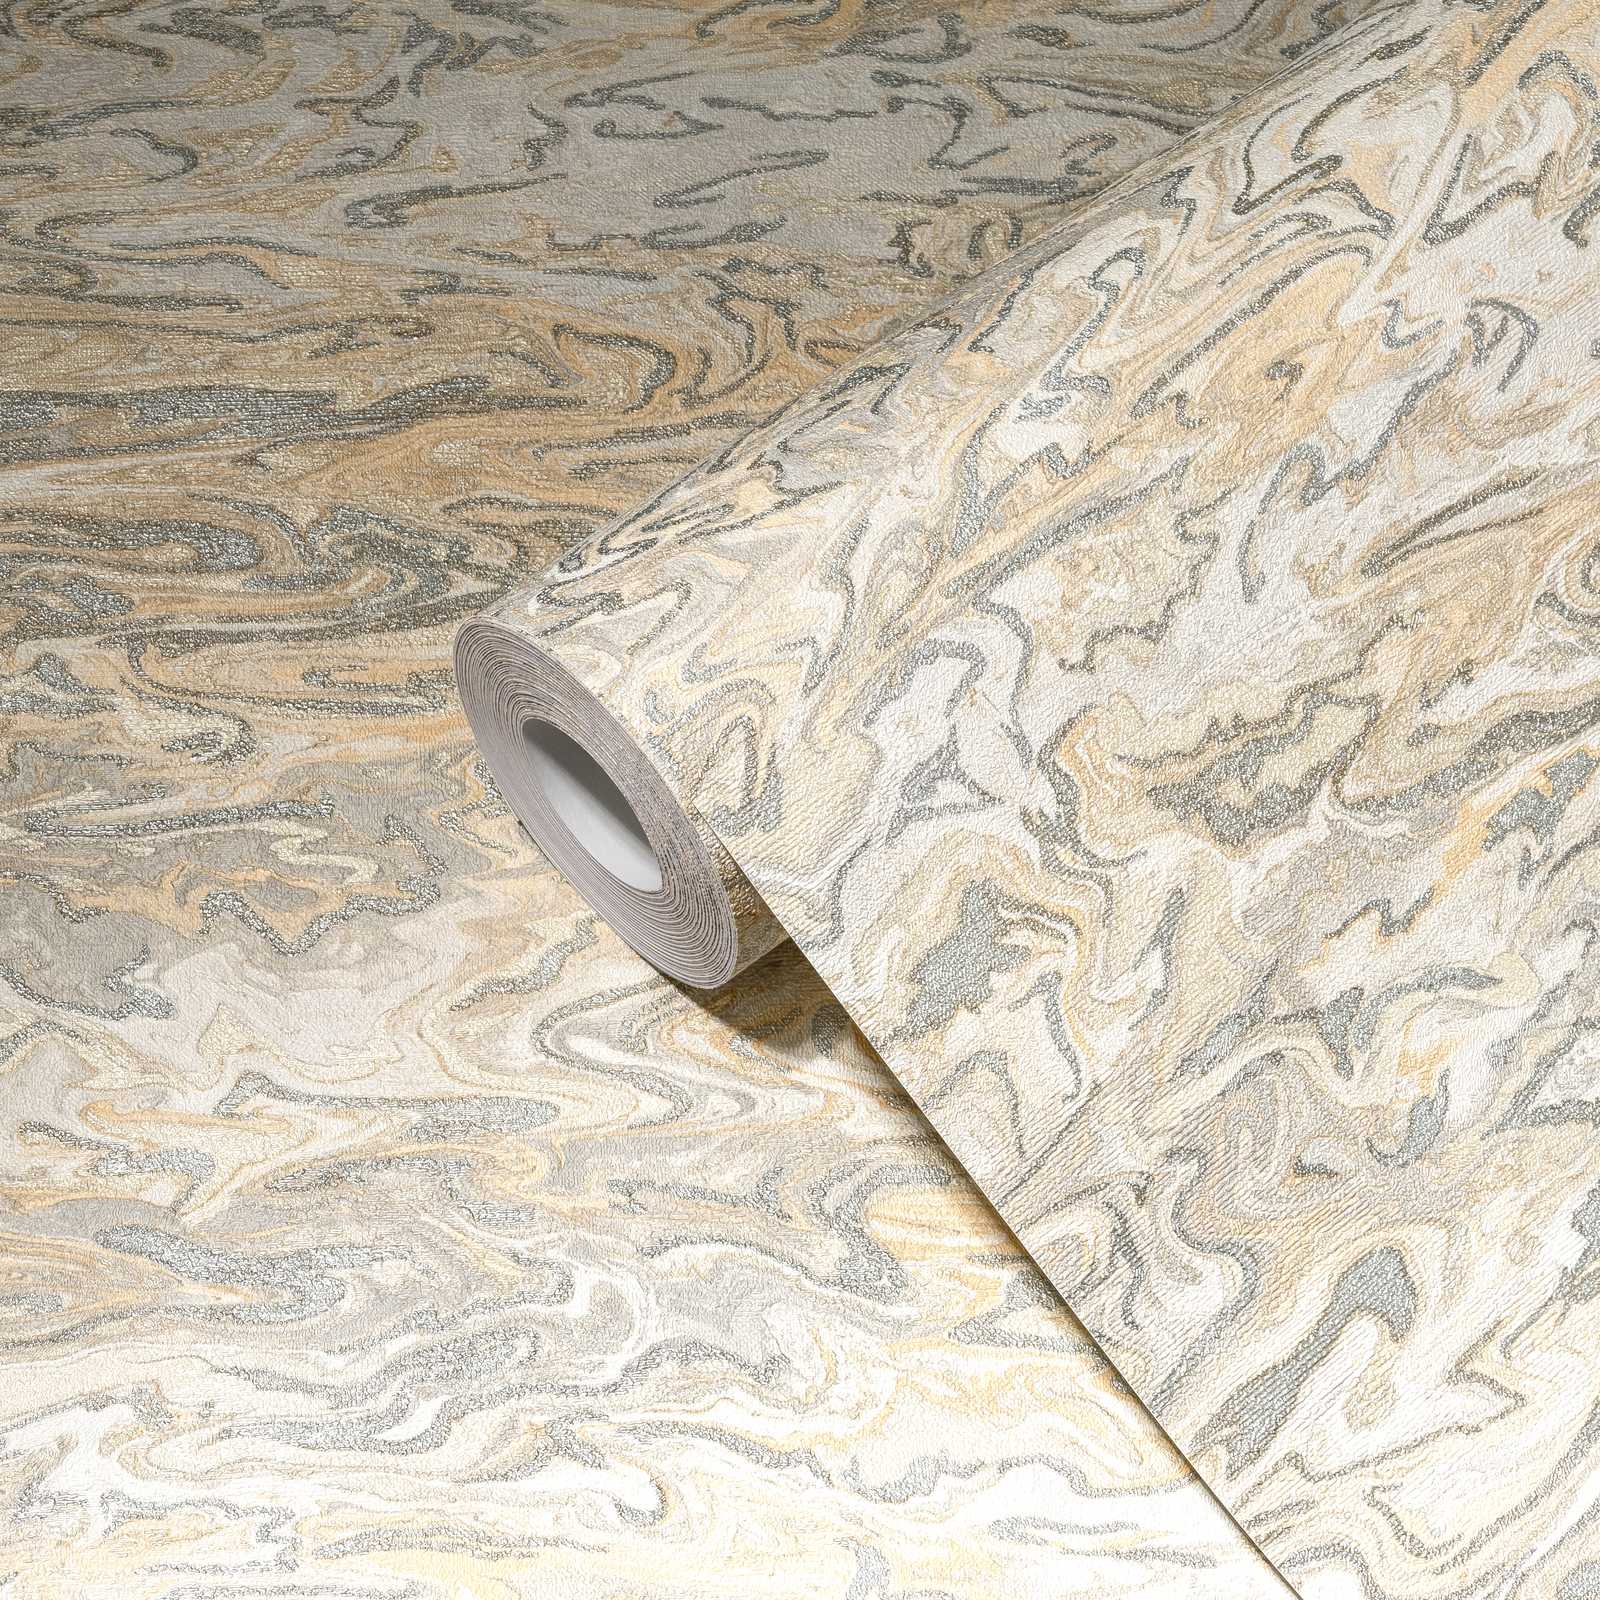             Papel pintado jaspeado diseño abstracto - beige, gris, crema
        